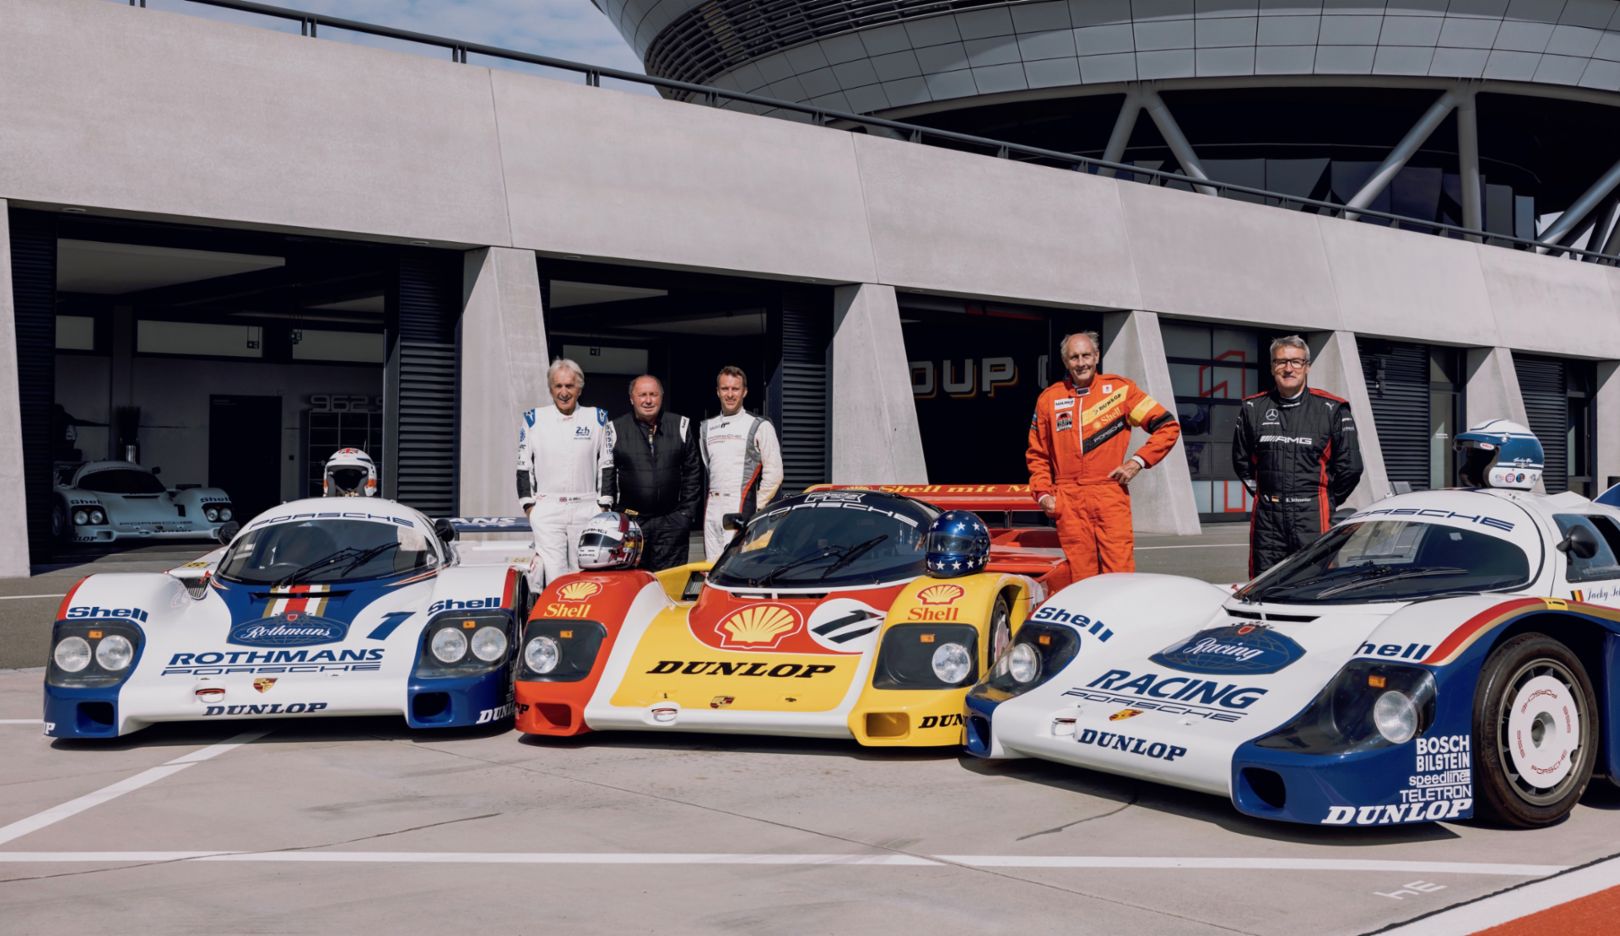 Pilotos del Grupo C: Derek Bell, Jochen Mass, Timo Bernhard, Hans-Joachim Stuck, Bernd Schneider, (i-d), 2022, Porsche AG